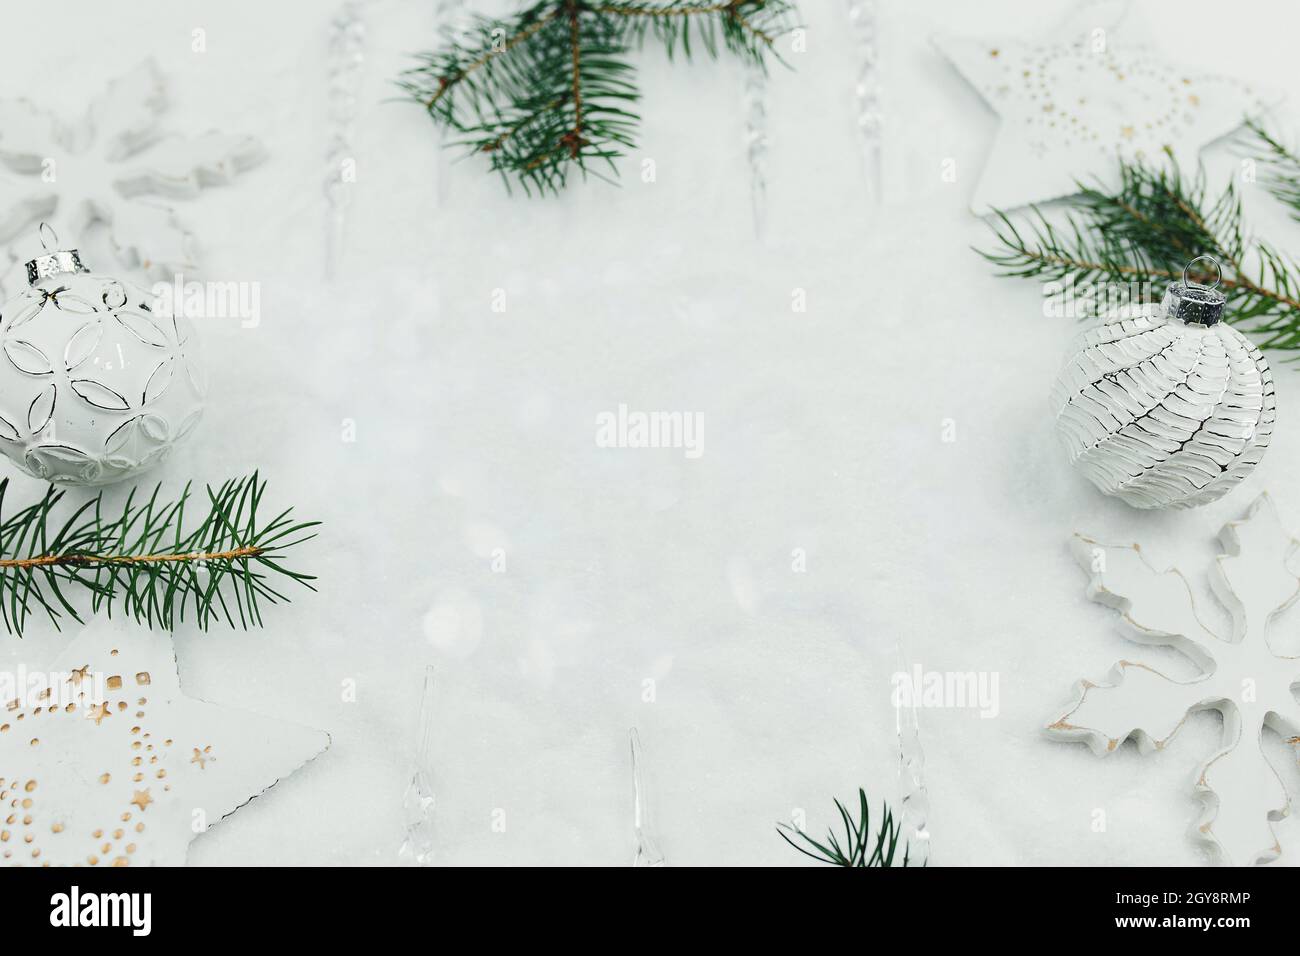 Không khí lễ hội sẽ tràn ngập trong ảnh trang trí Giáng sinh trắng và nhánh thông trên tuyết, thiệp Giáng sinh. Chỉ cần nhìn ảnh, bạn sẽ cảm thấy bị quyến rũ bởi sắc trắng tuyết, khung cảnh đầy mơ mộng và trang trí đẹp mắt. Hãy khám phá thật nhiều hình ảnh ấn tượng trên trang của chúng tôi.